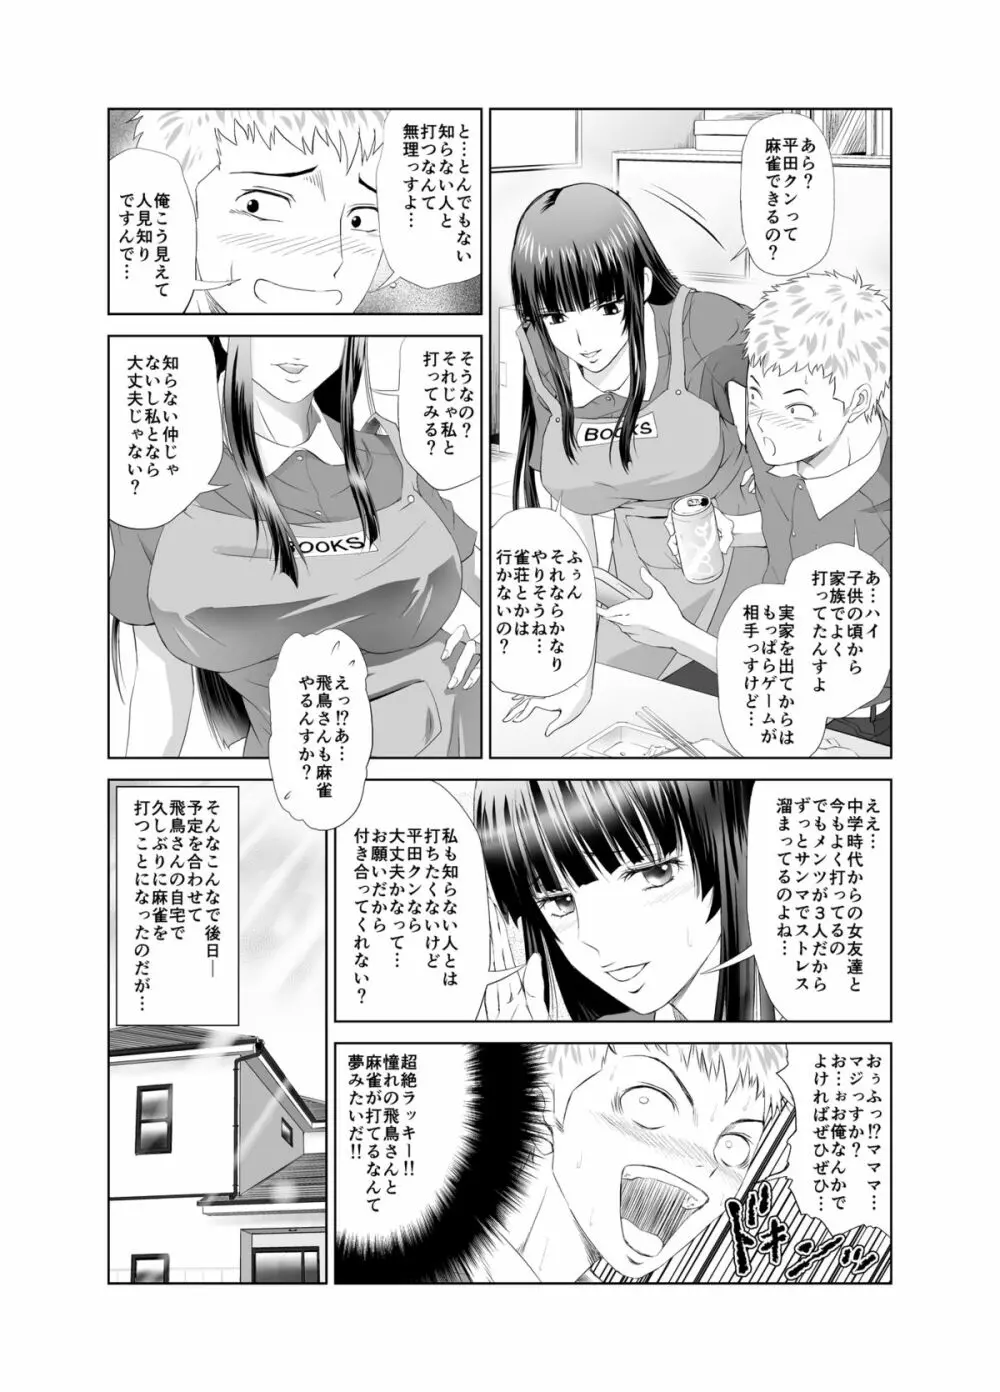 脱衣麻雀～漫画編～【完成版】 5ページ